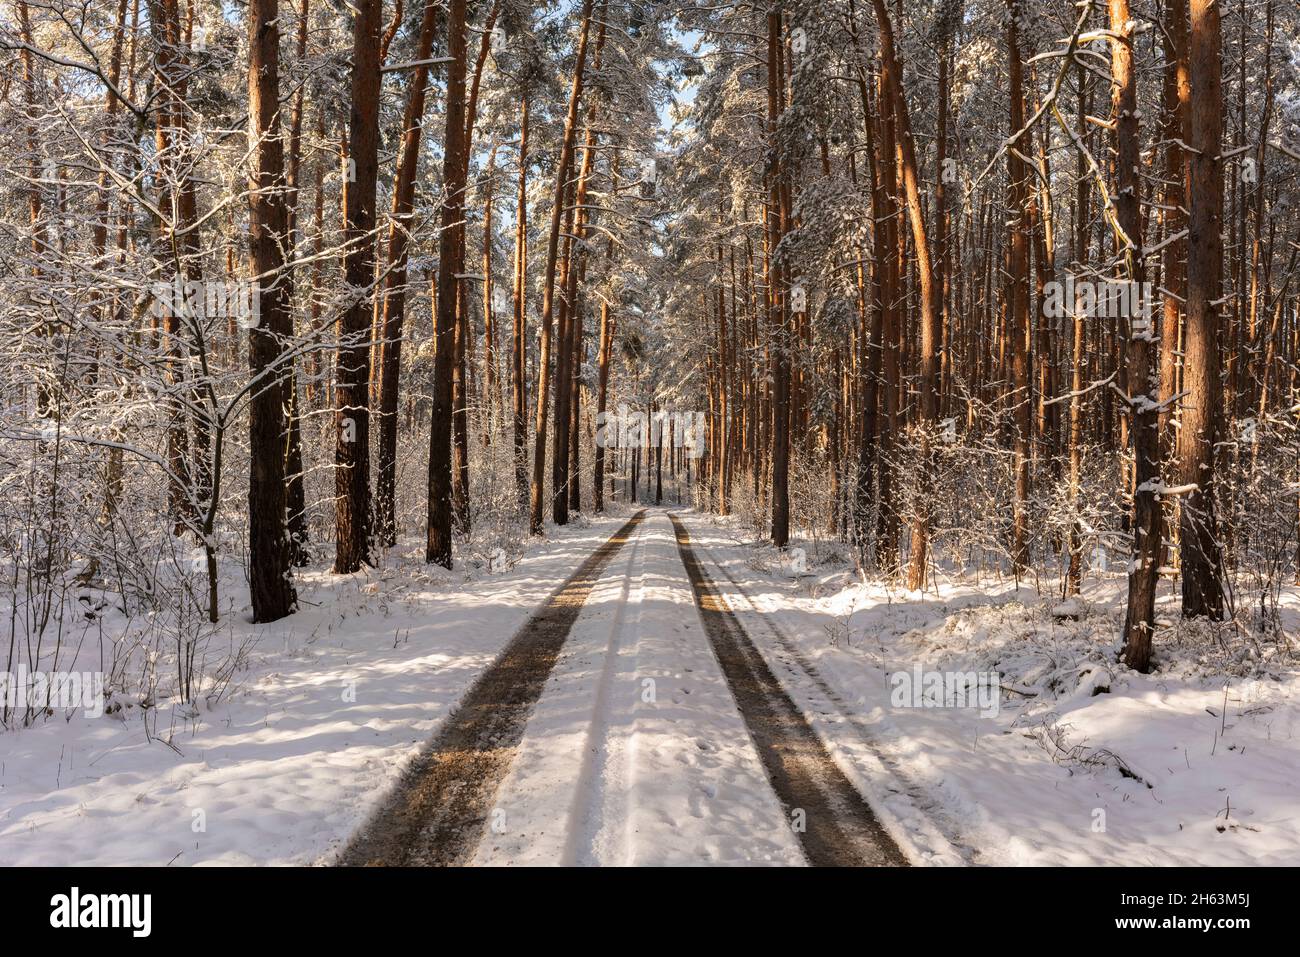 route forestière enneigée en hiver, arbres enneigés, paysage hivernal, lumière et ombres Banque D'Images